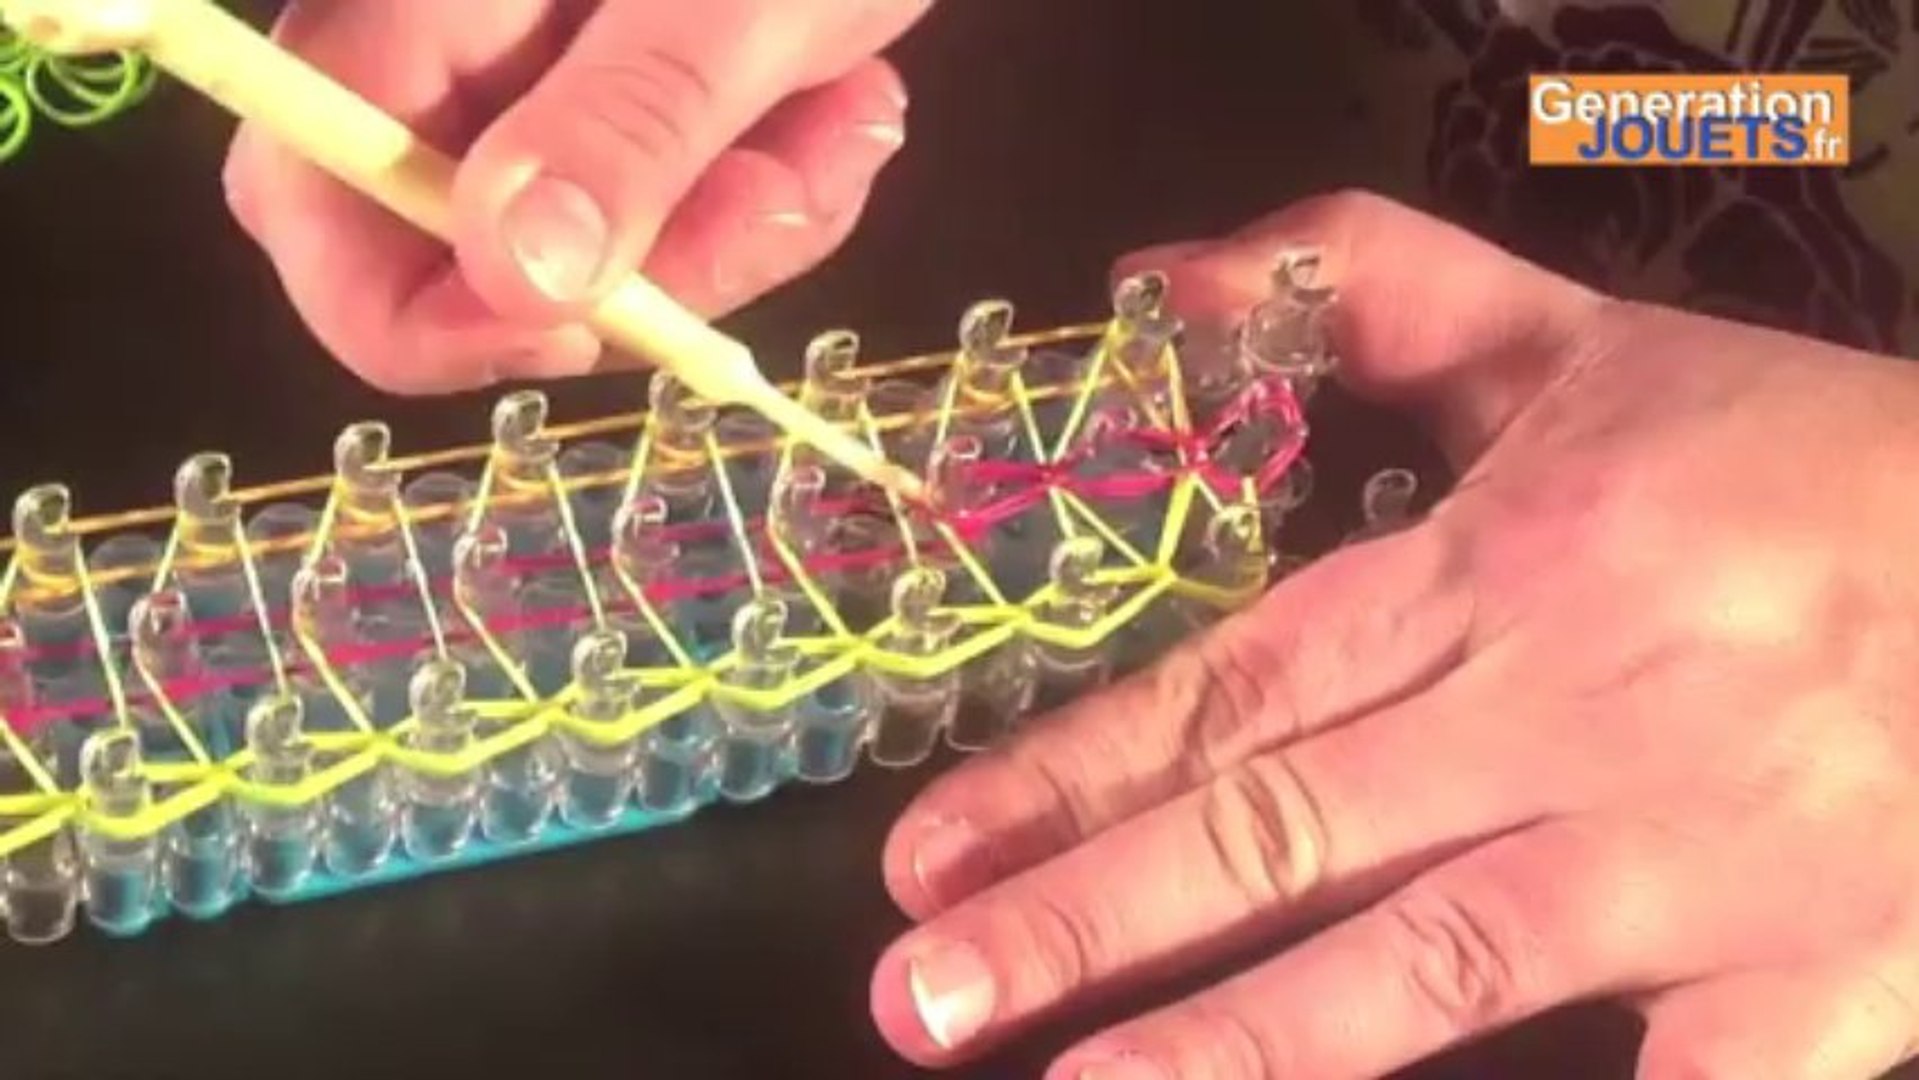 Tutoriel : Comment réaliser un bracelet élastique HEXAFISH RAINBOW